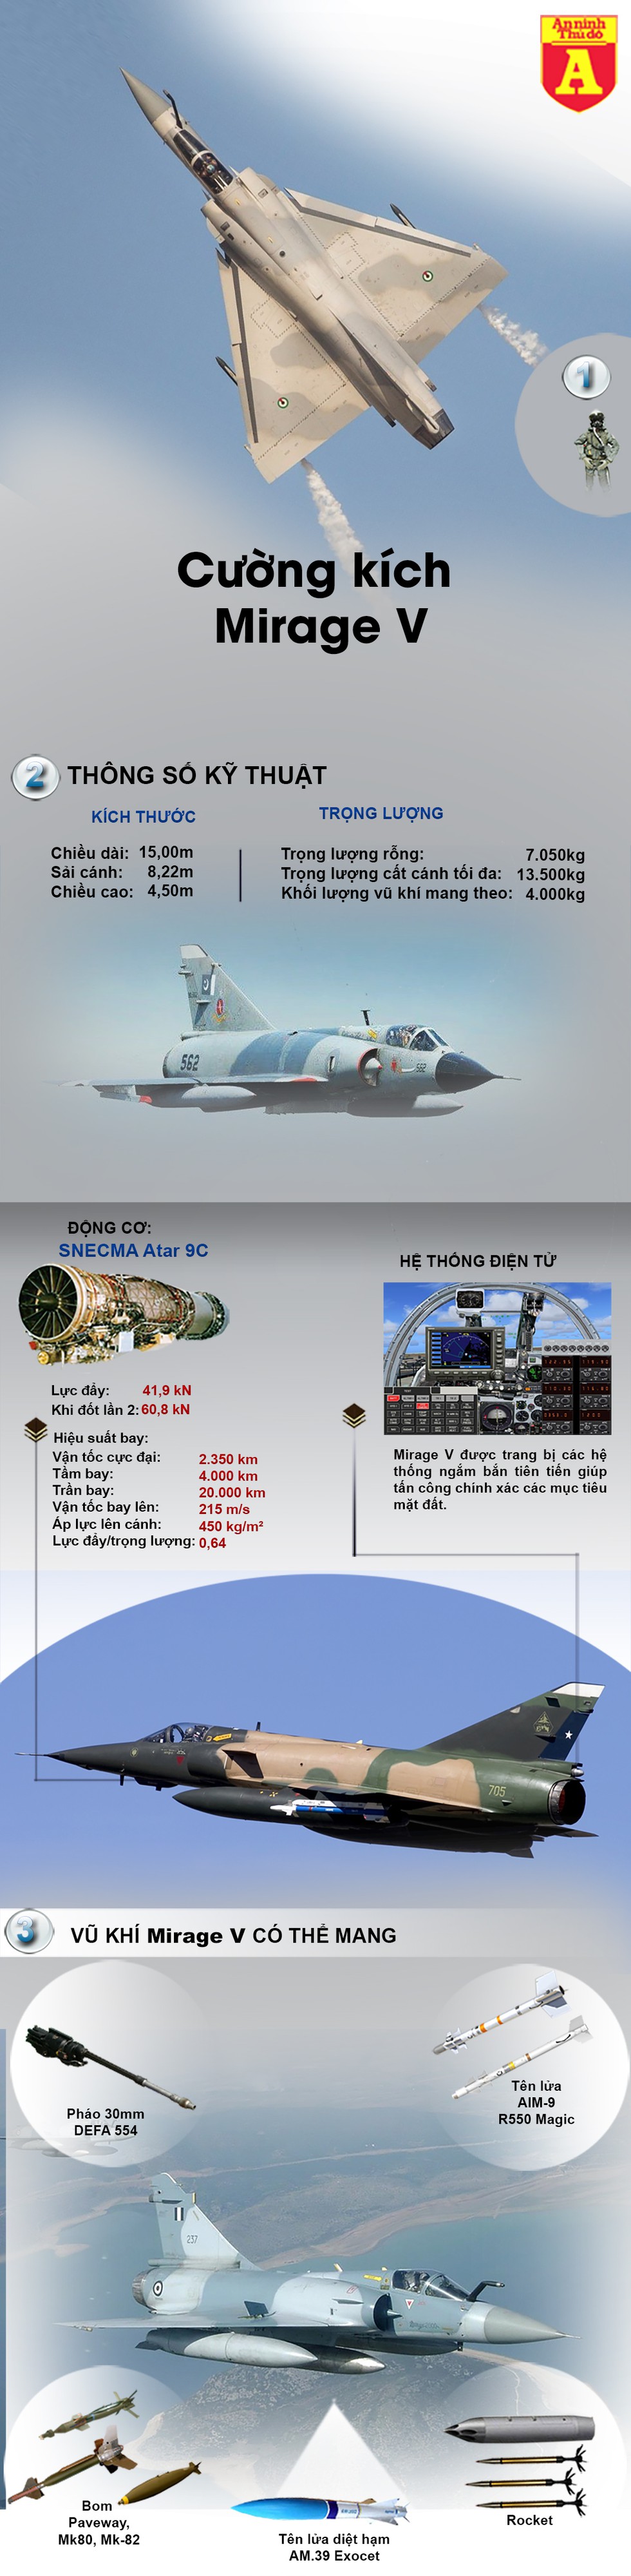 [Infographic] Mua thêm 36 chiến đấu cơ Mirage V, Pakistan quyết đấu Ấn Độ? - Ảnh 1